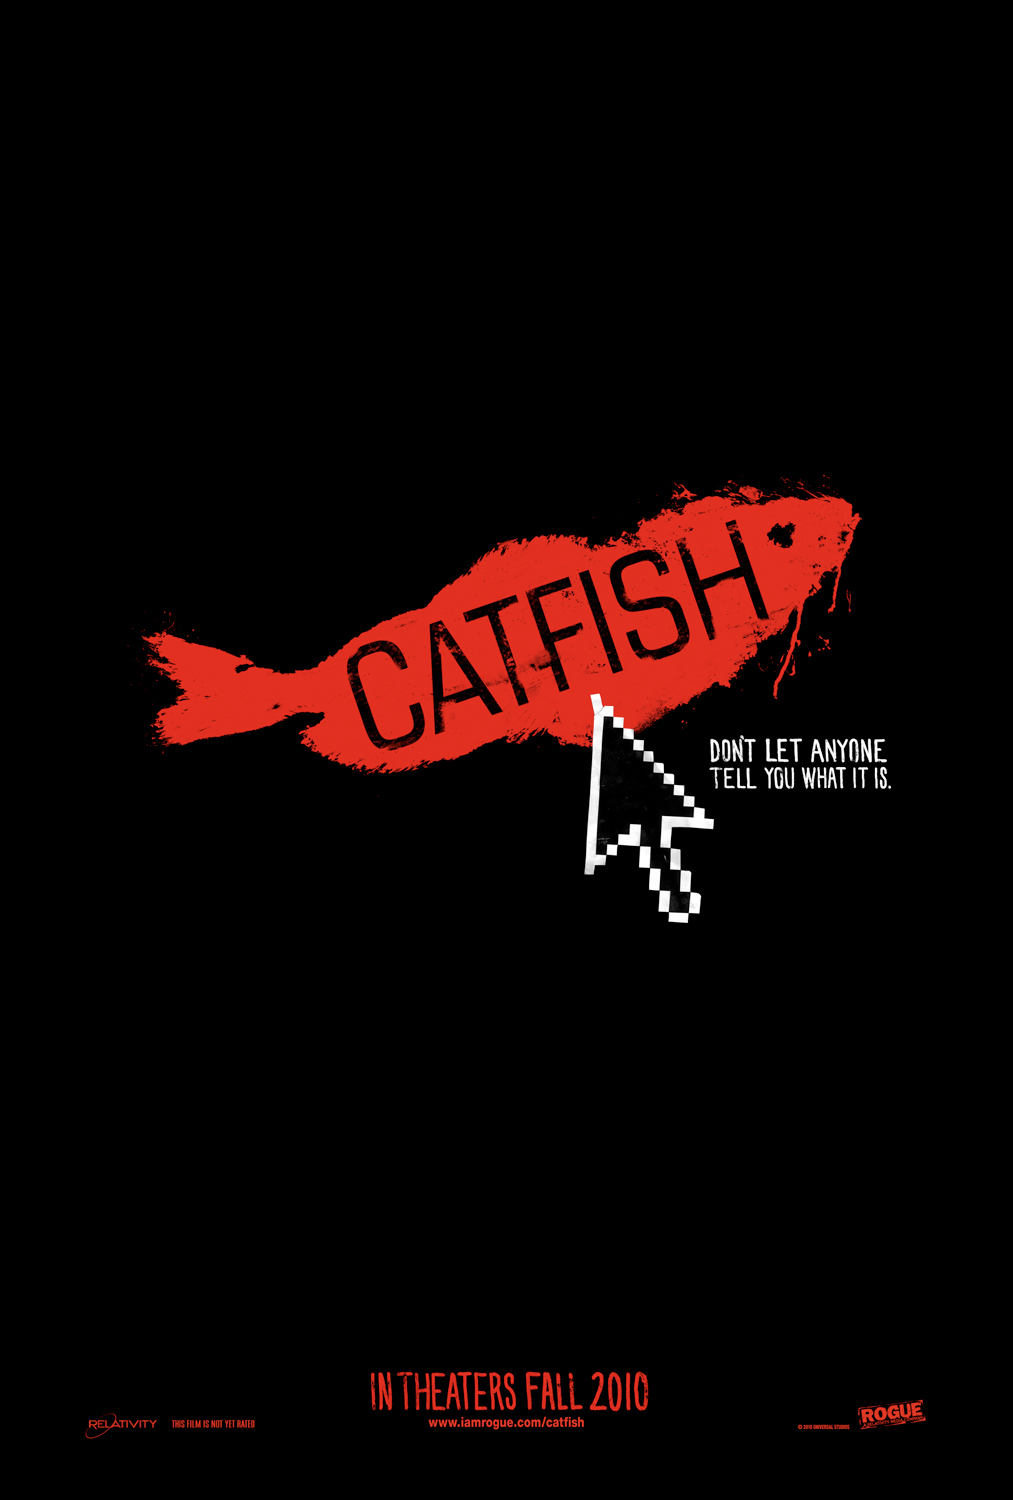 Catfish Photo Gallery